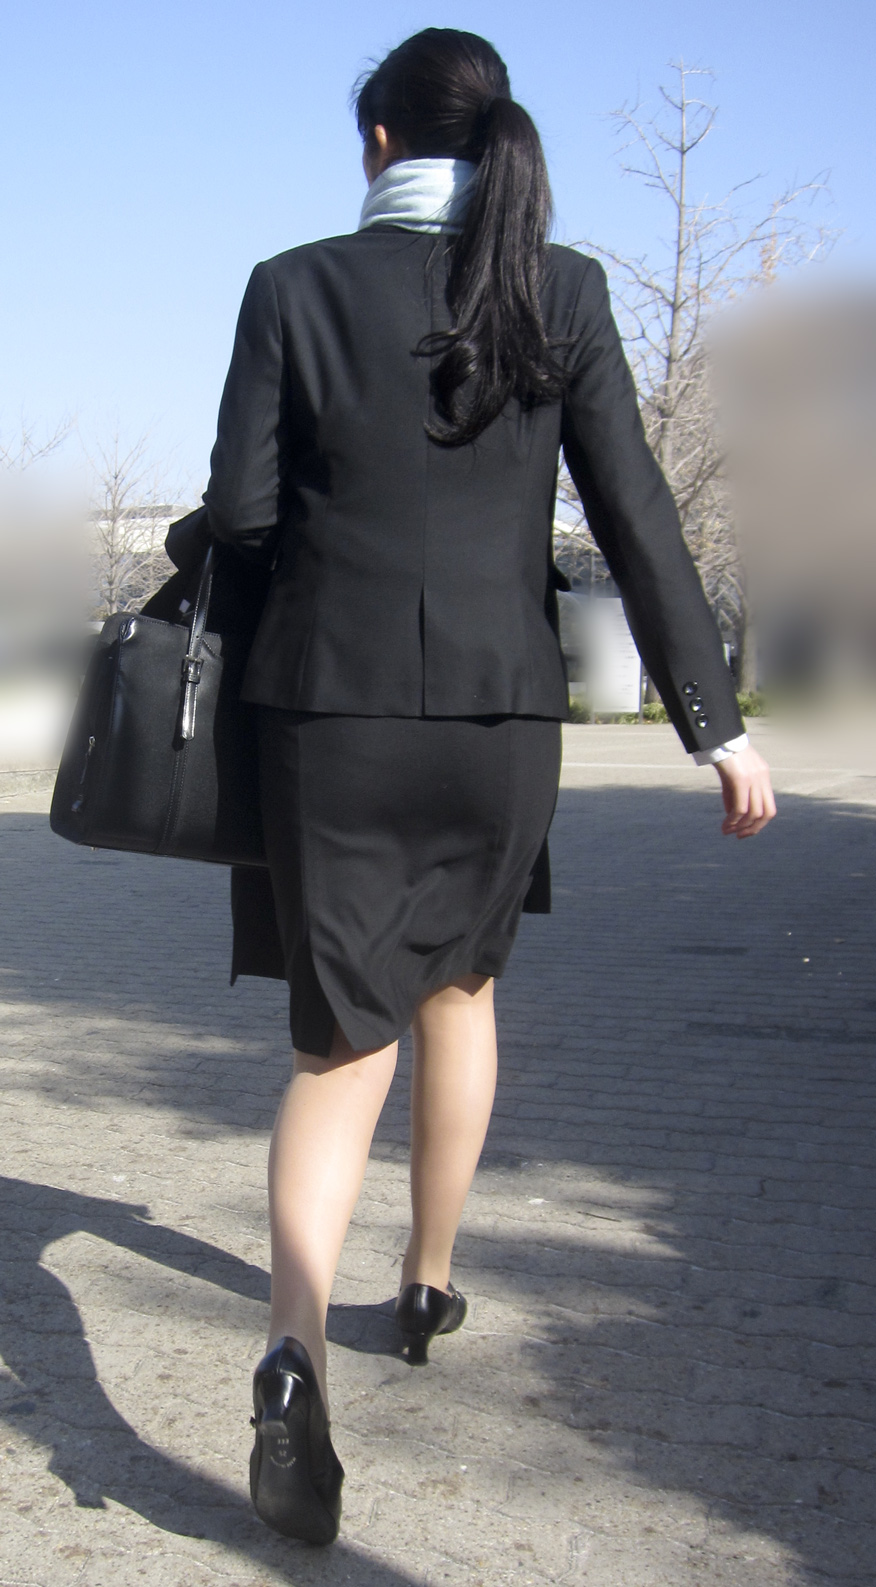 OLさんや就活女子のタイトスカートお尻を街撮りした素人エロ画像-084